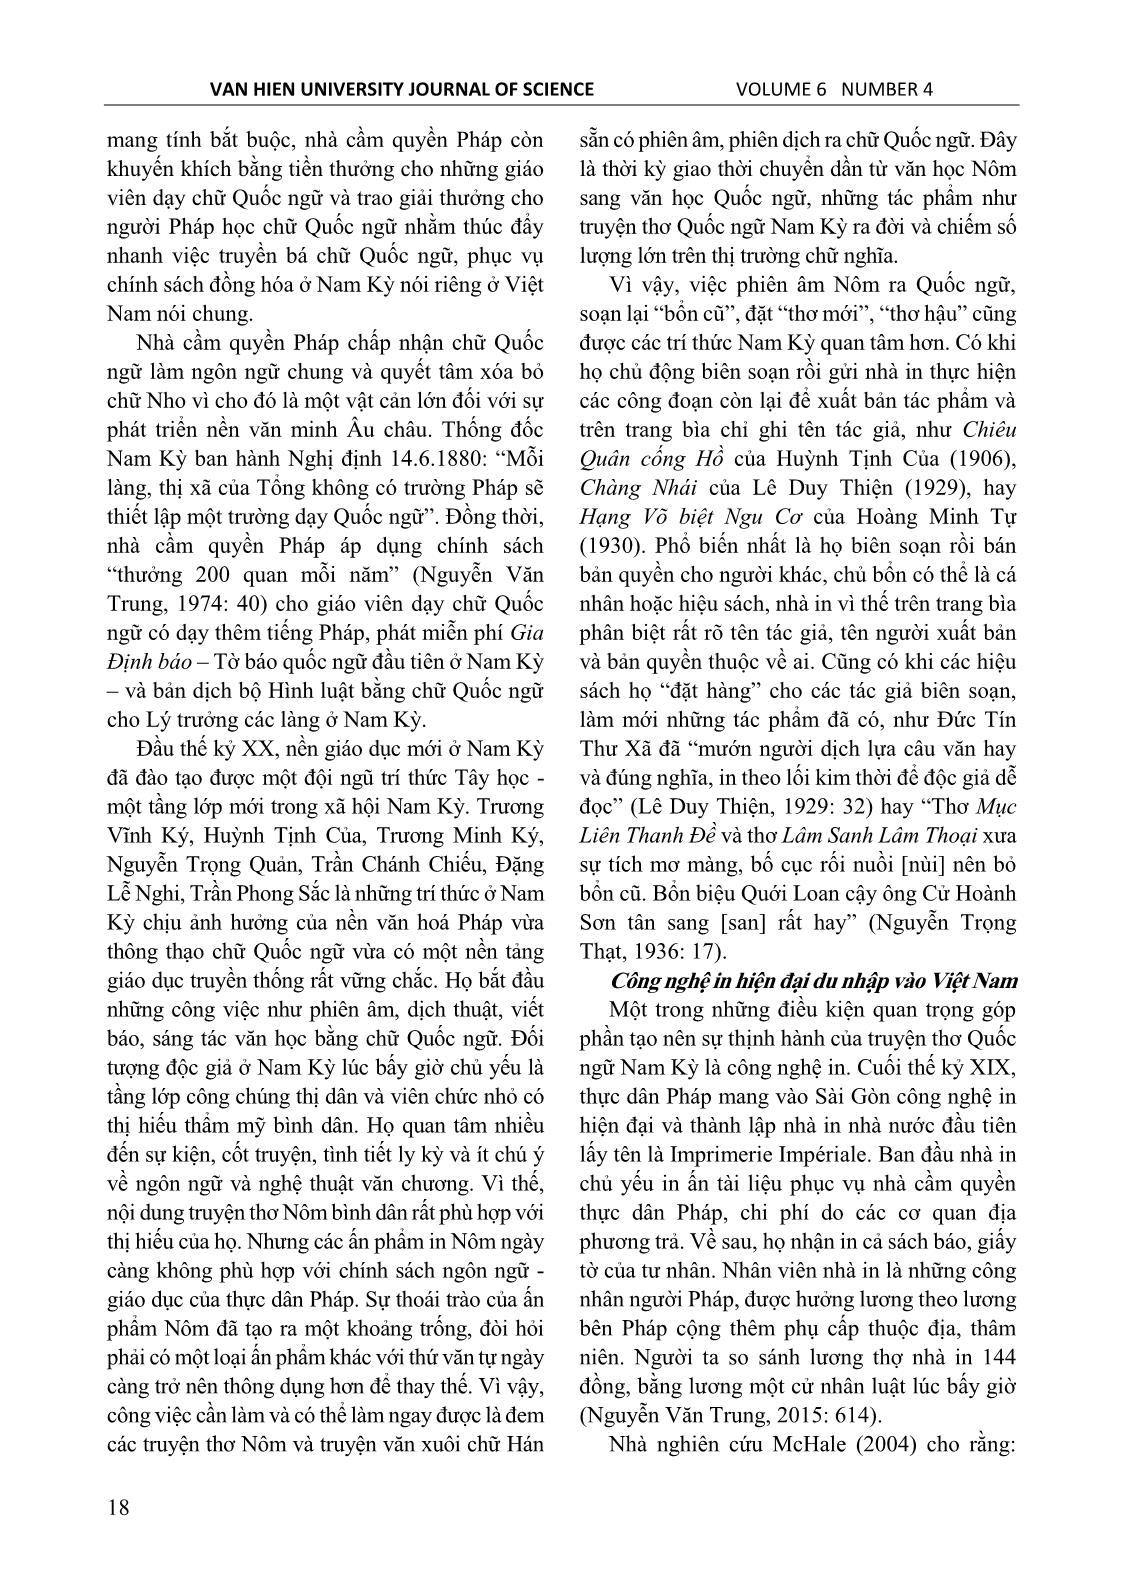 Truyện thơ Quốc ngữ Nam kỳ – Một loại hình văn chương bị lãng quên trang 2